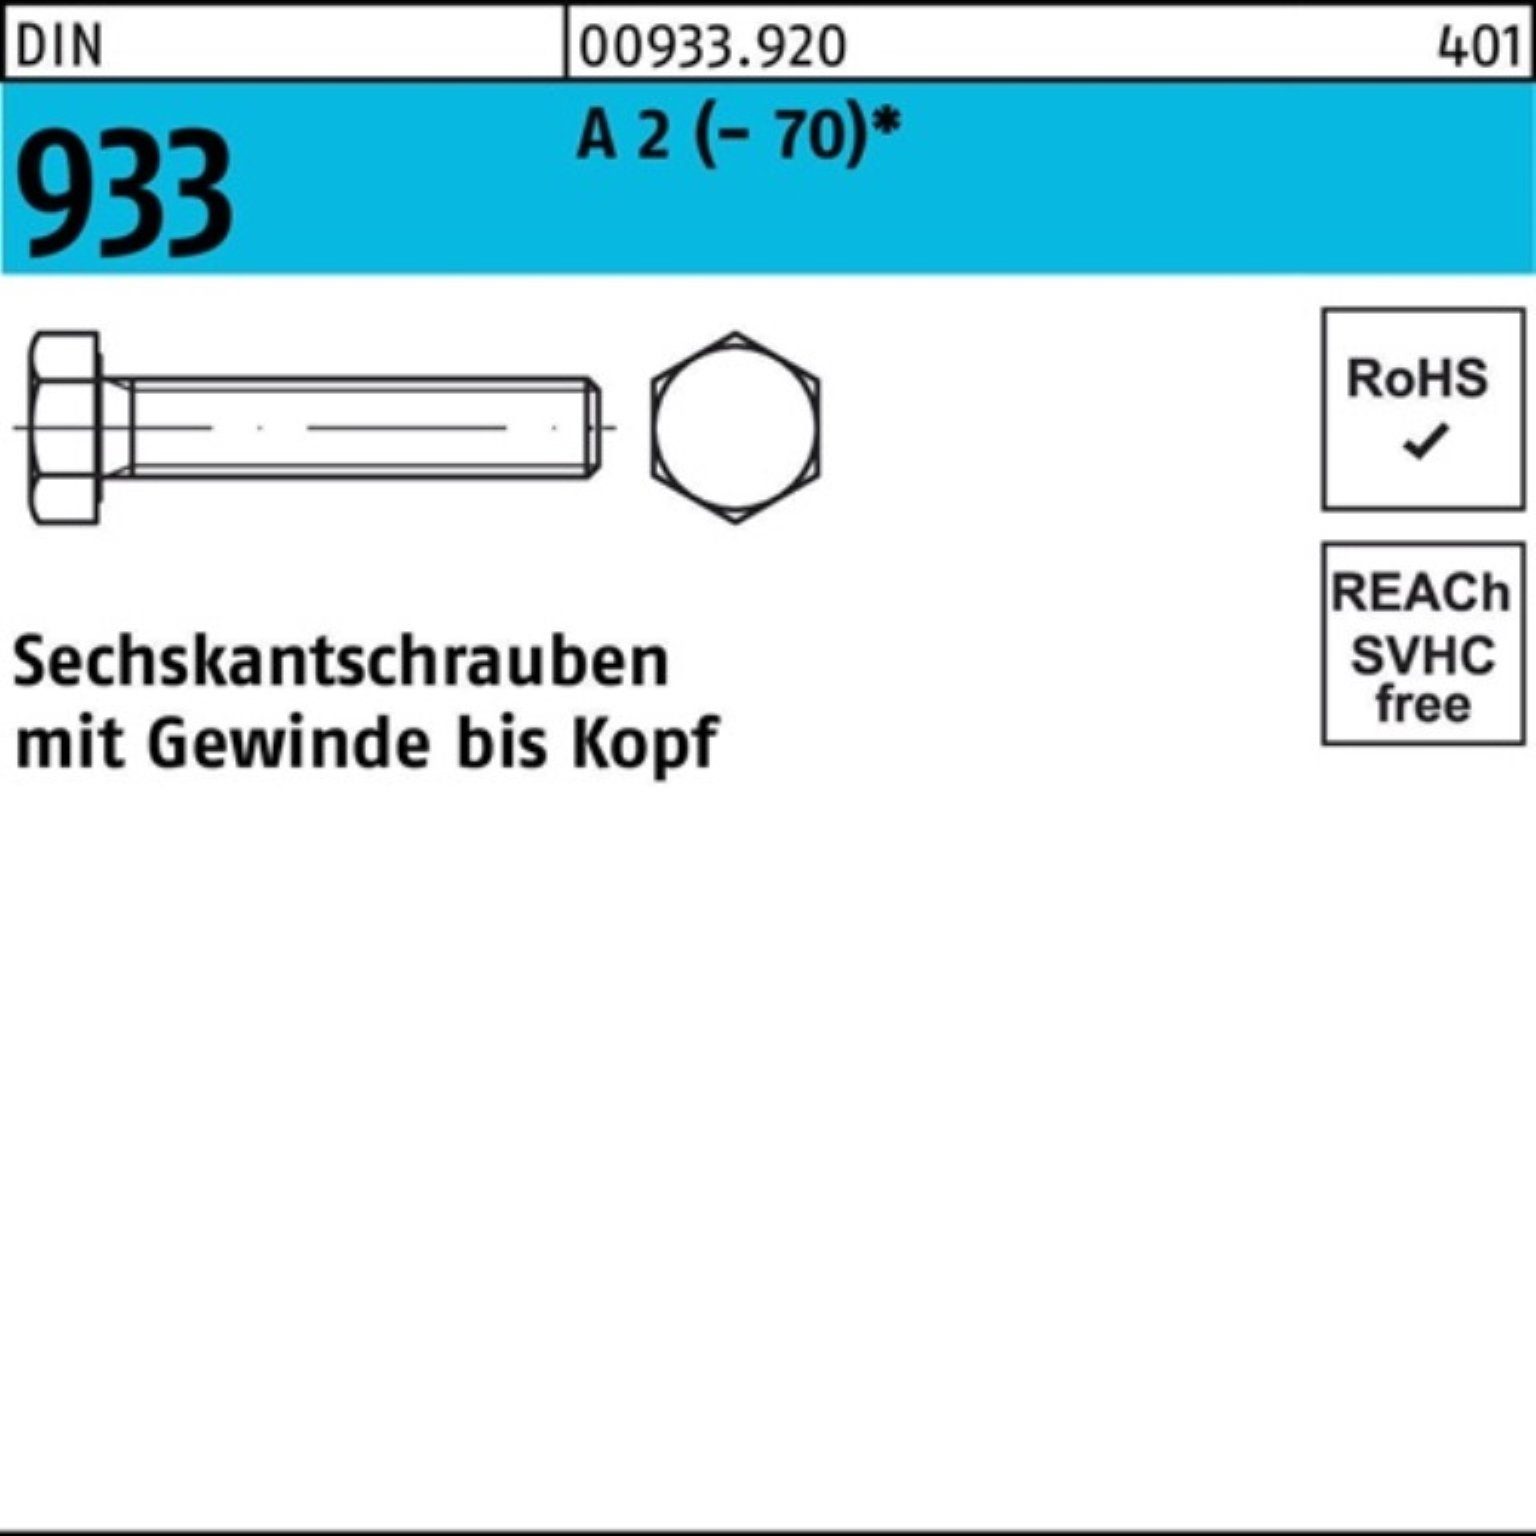 Sechskantschraube Reyher Pack DIN D 100er VG 933 20 (70) A 2 Stück M6x Sechskantschraube 100